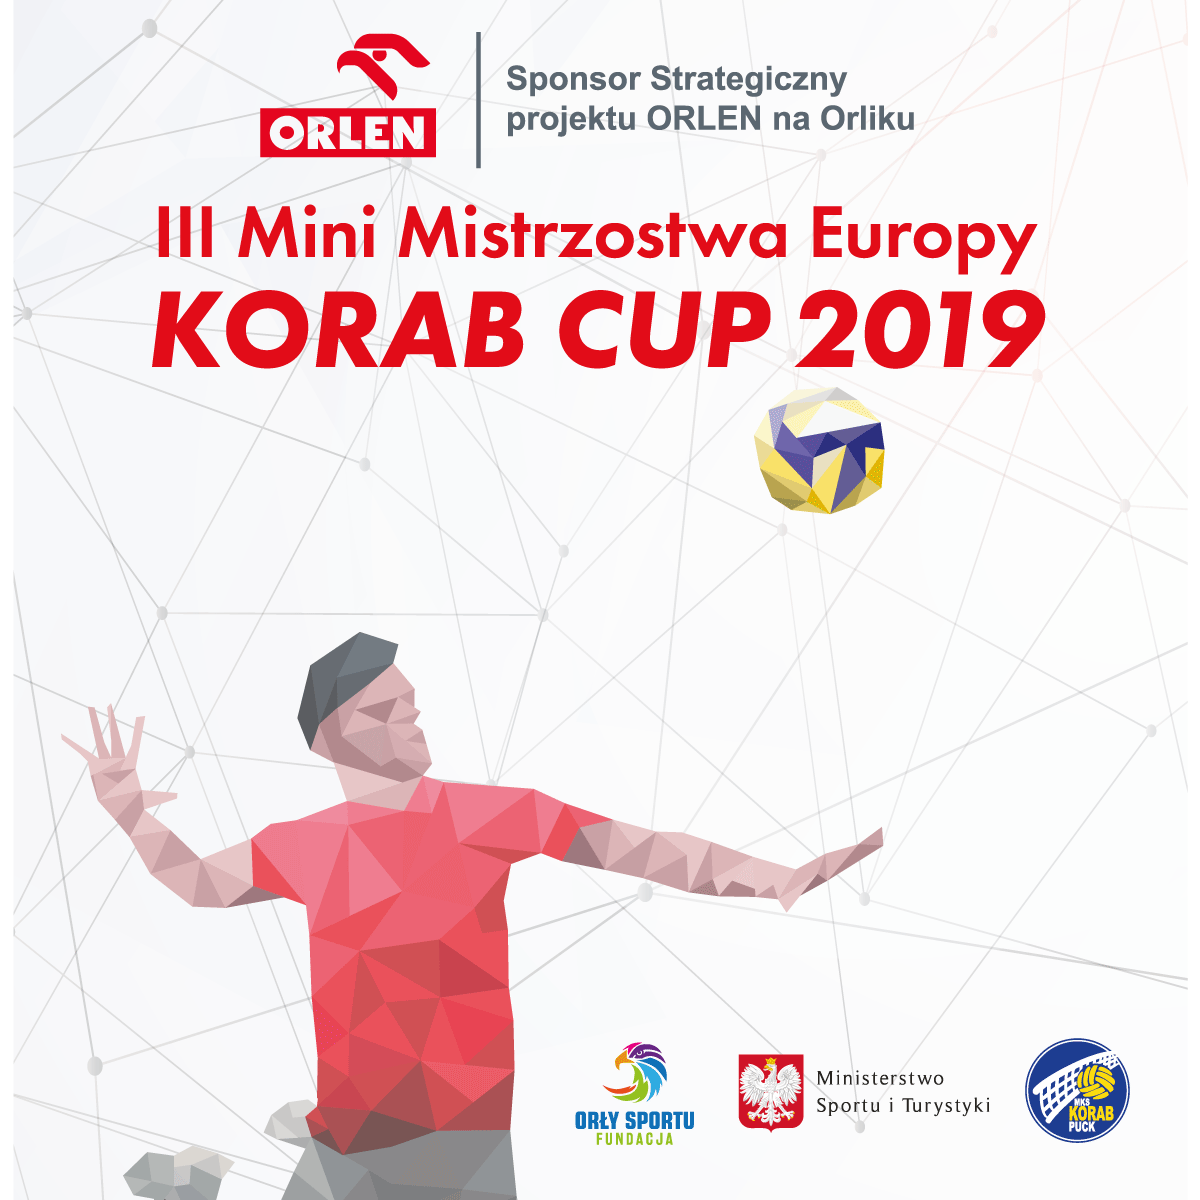 III Mini Mistrzostwa Europy KORAB CUP 2019